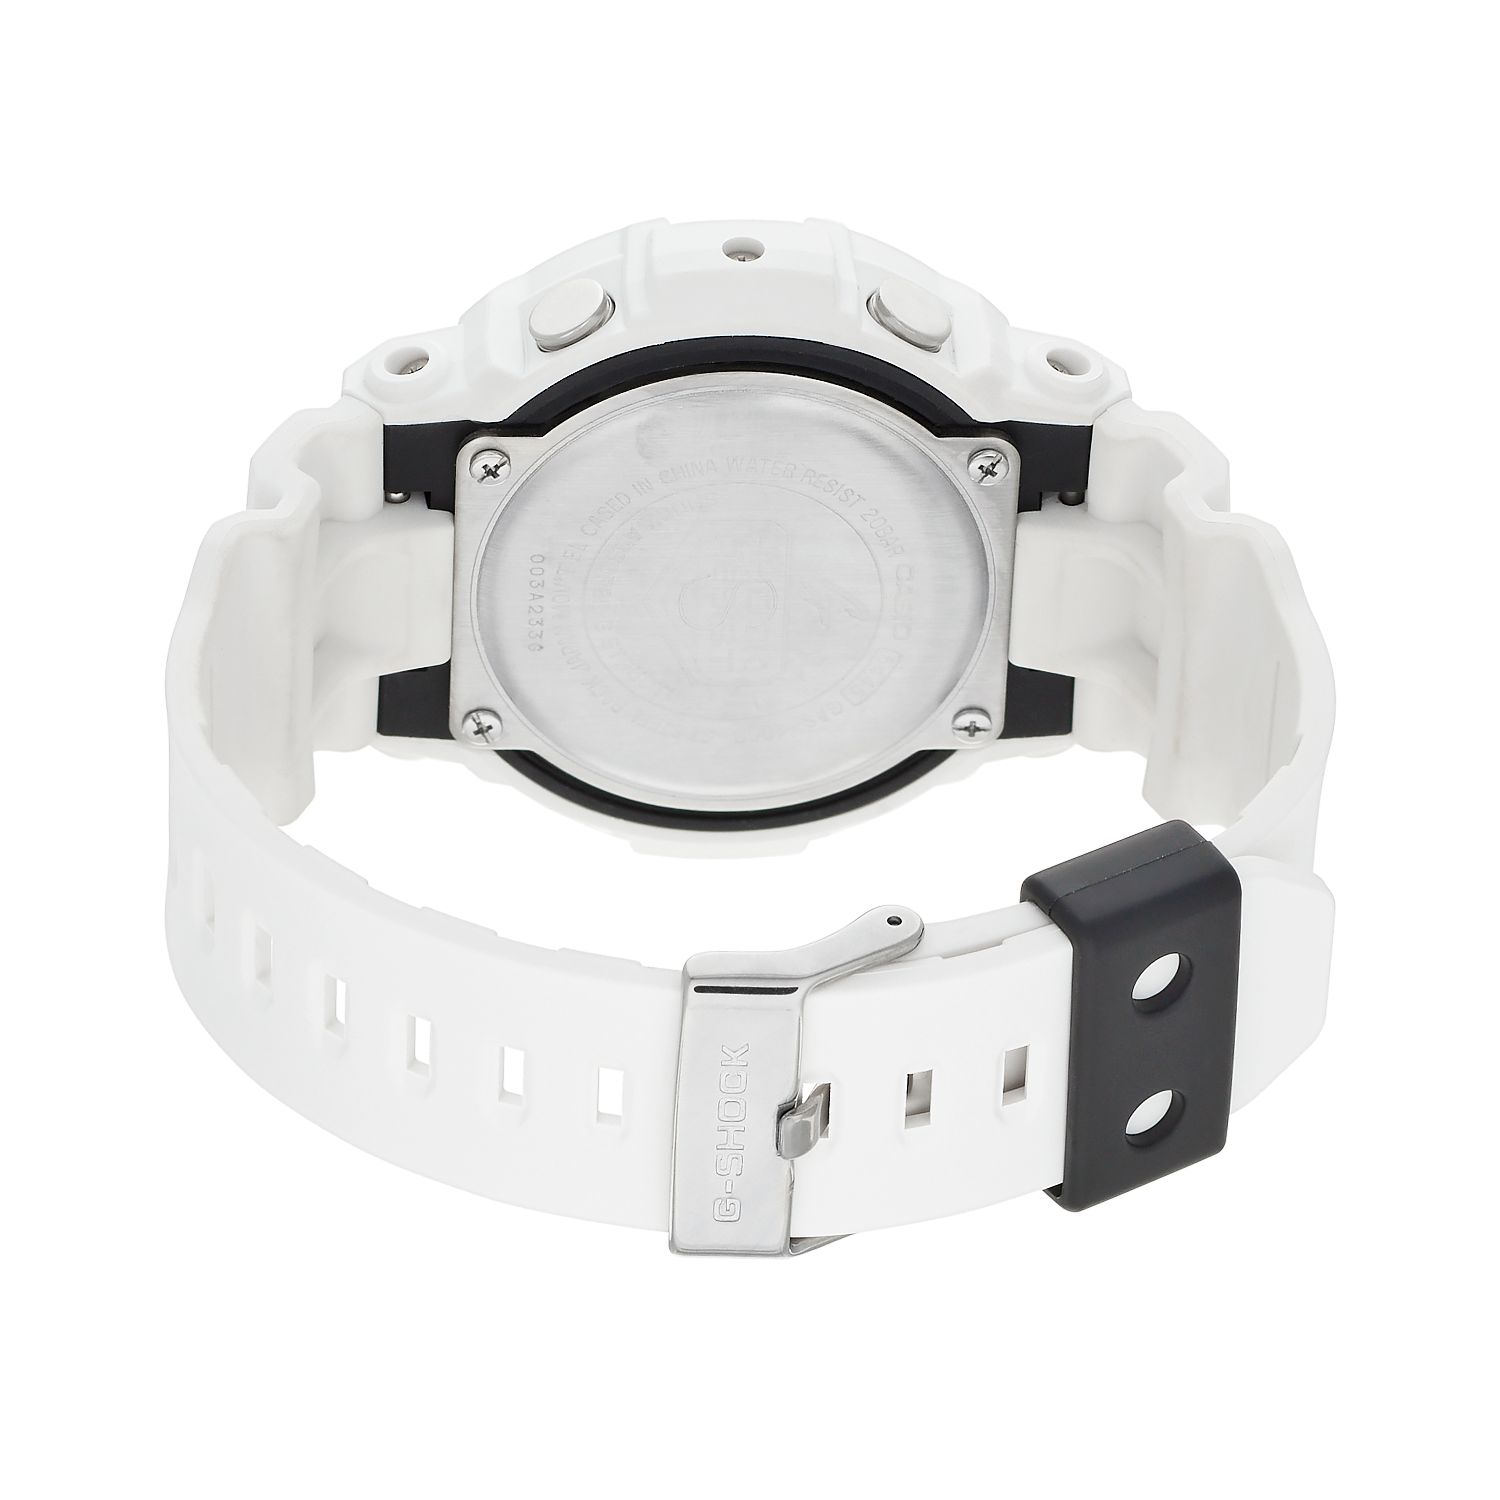 Мужские аналогово-цифровые часы G-Shock Tough Solar с солнечной батареей — GAS100B-7A Casio цена и фото